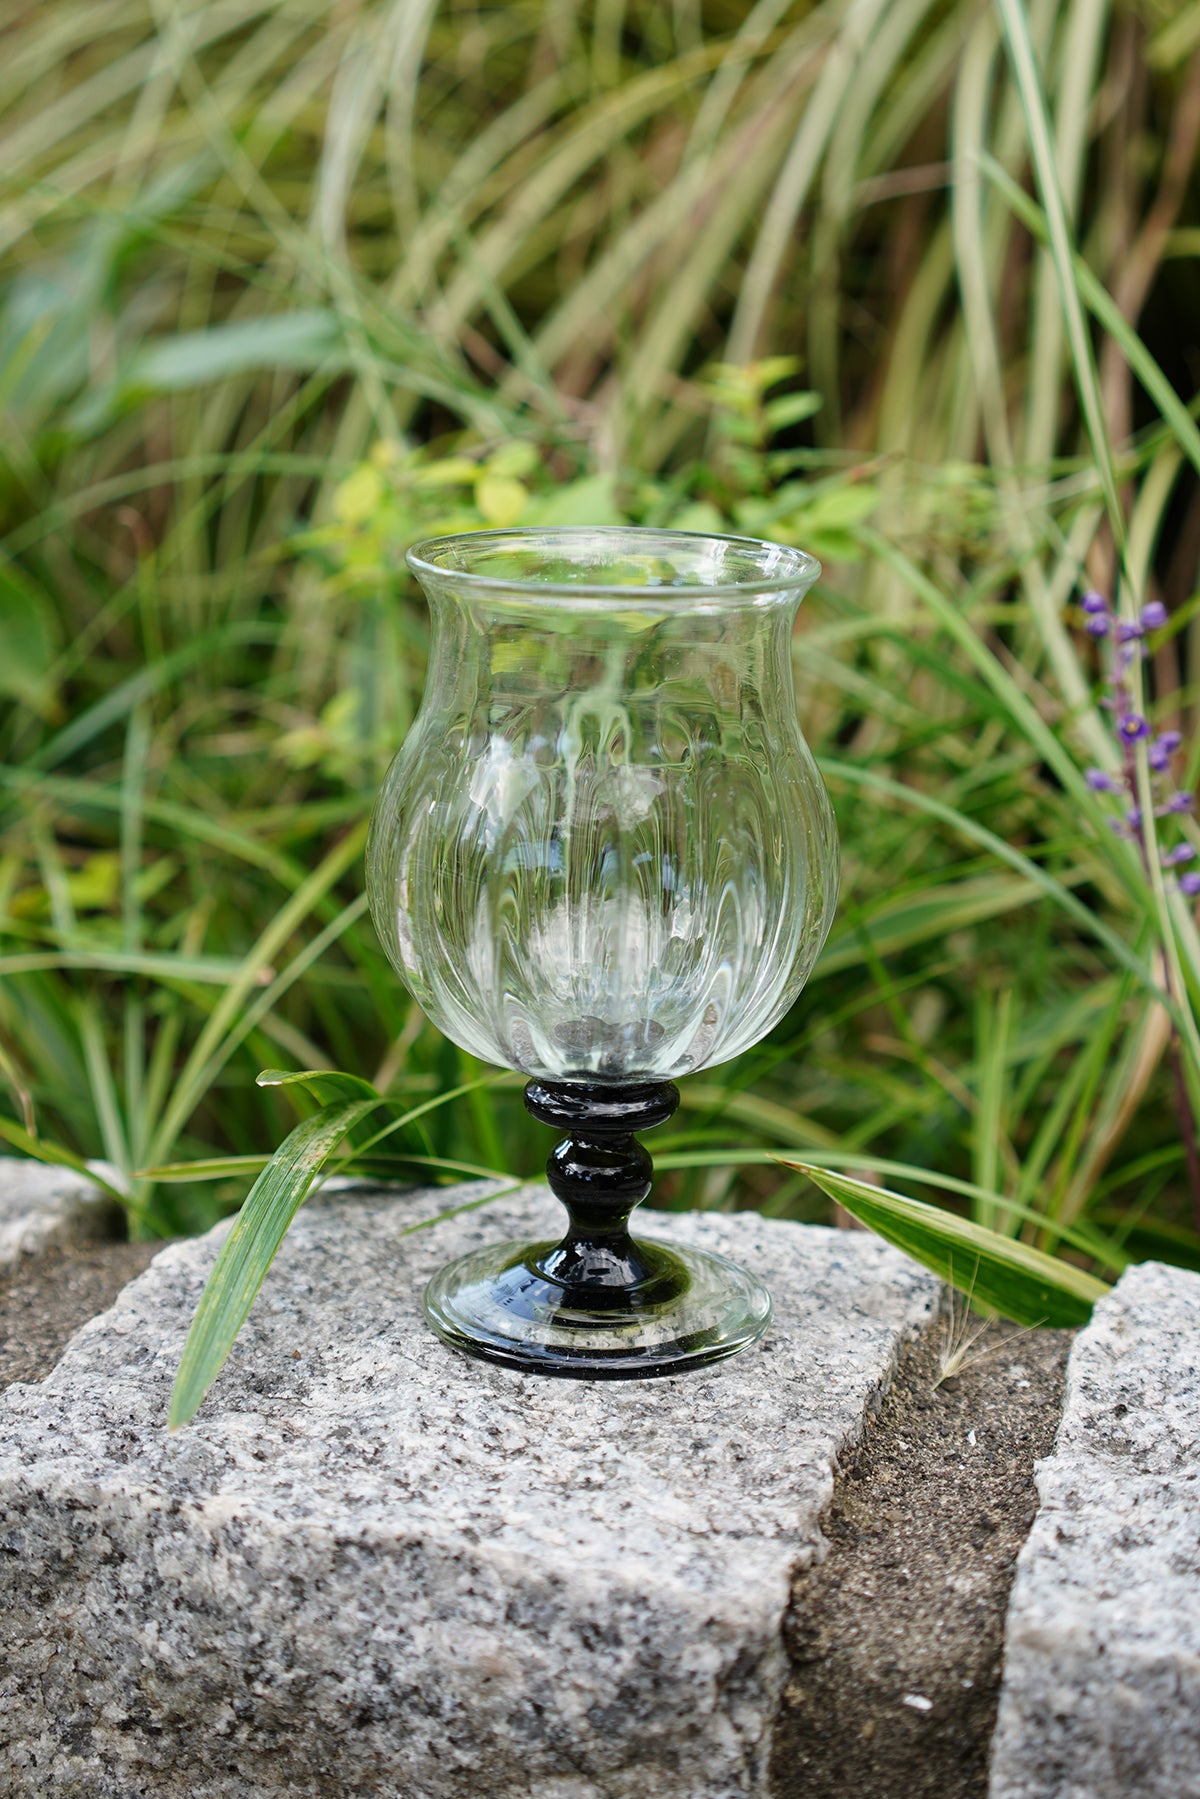 Glass studio wine glass